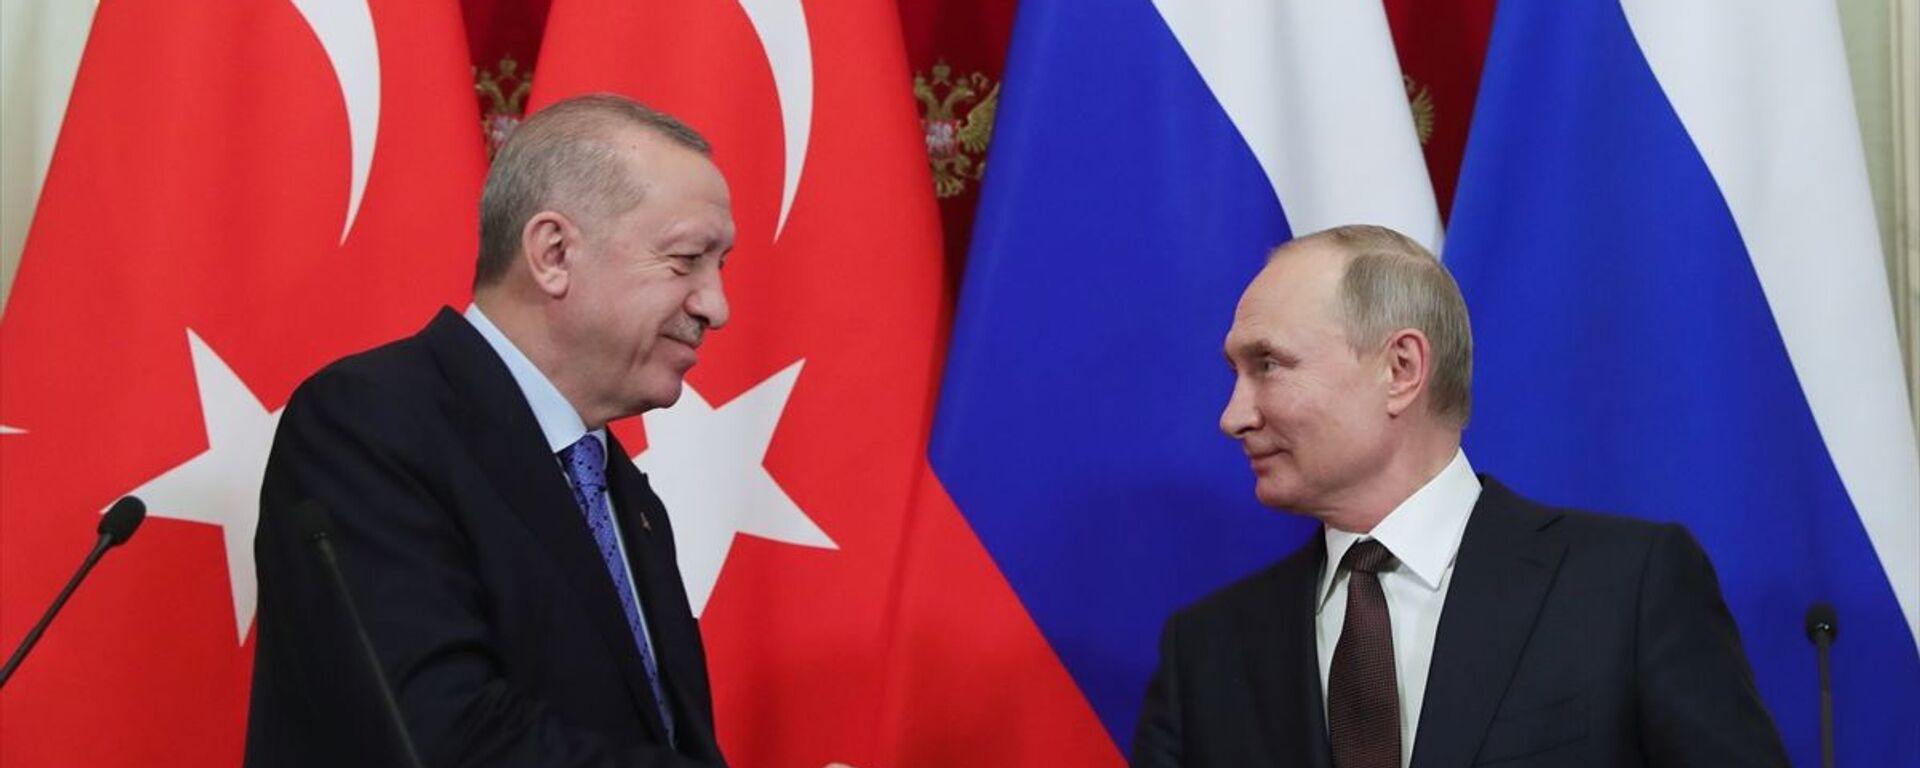 Türkiye Cumhurbaşkanı Recep Tayyip Erdoğan ile Rusya Devlet Başkanı Vladimir Putin - Sputnik Türkiye, 1920, 27.09.2021